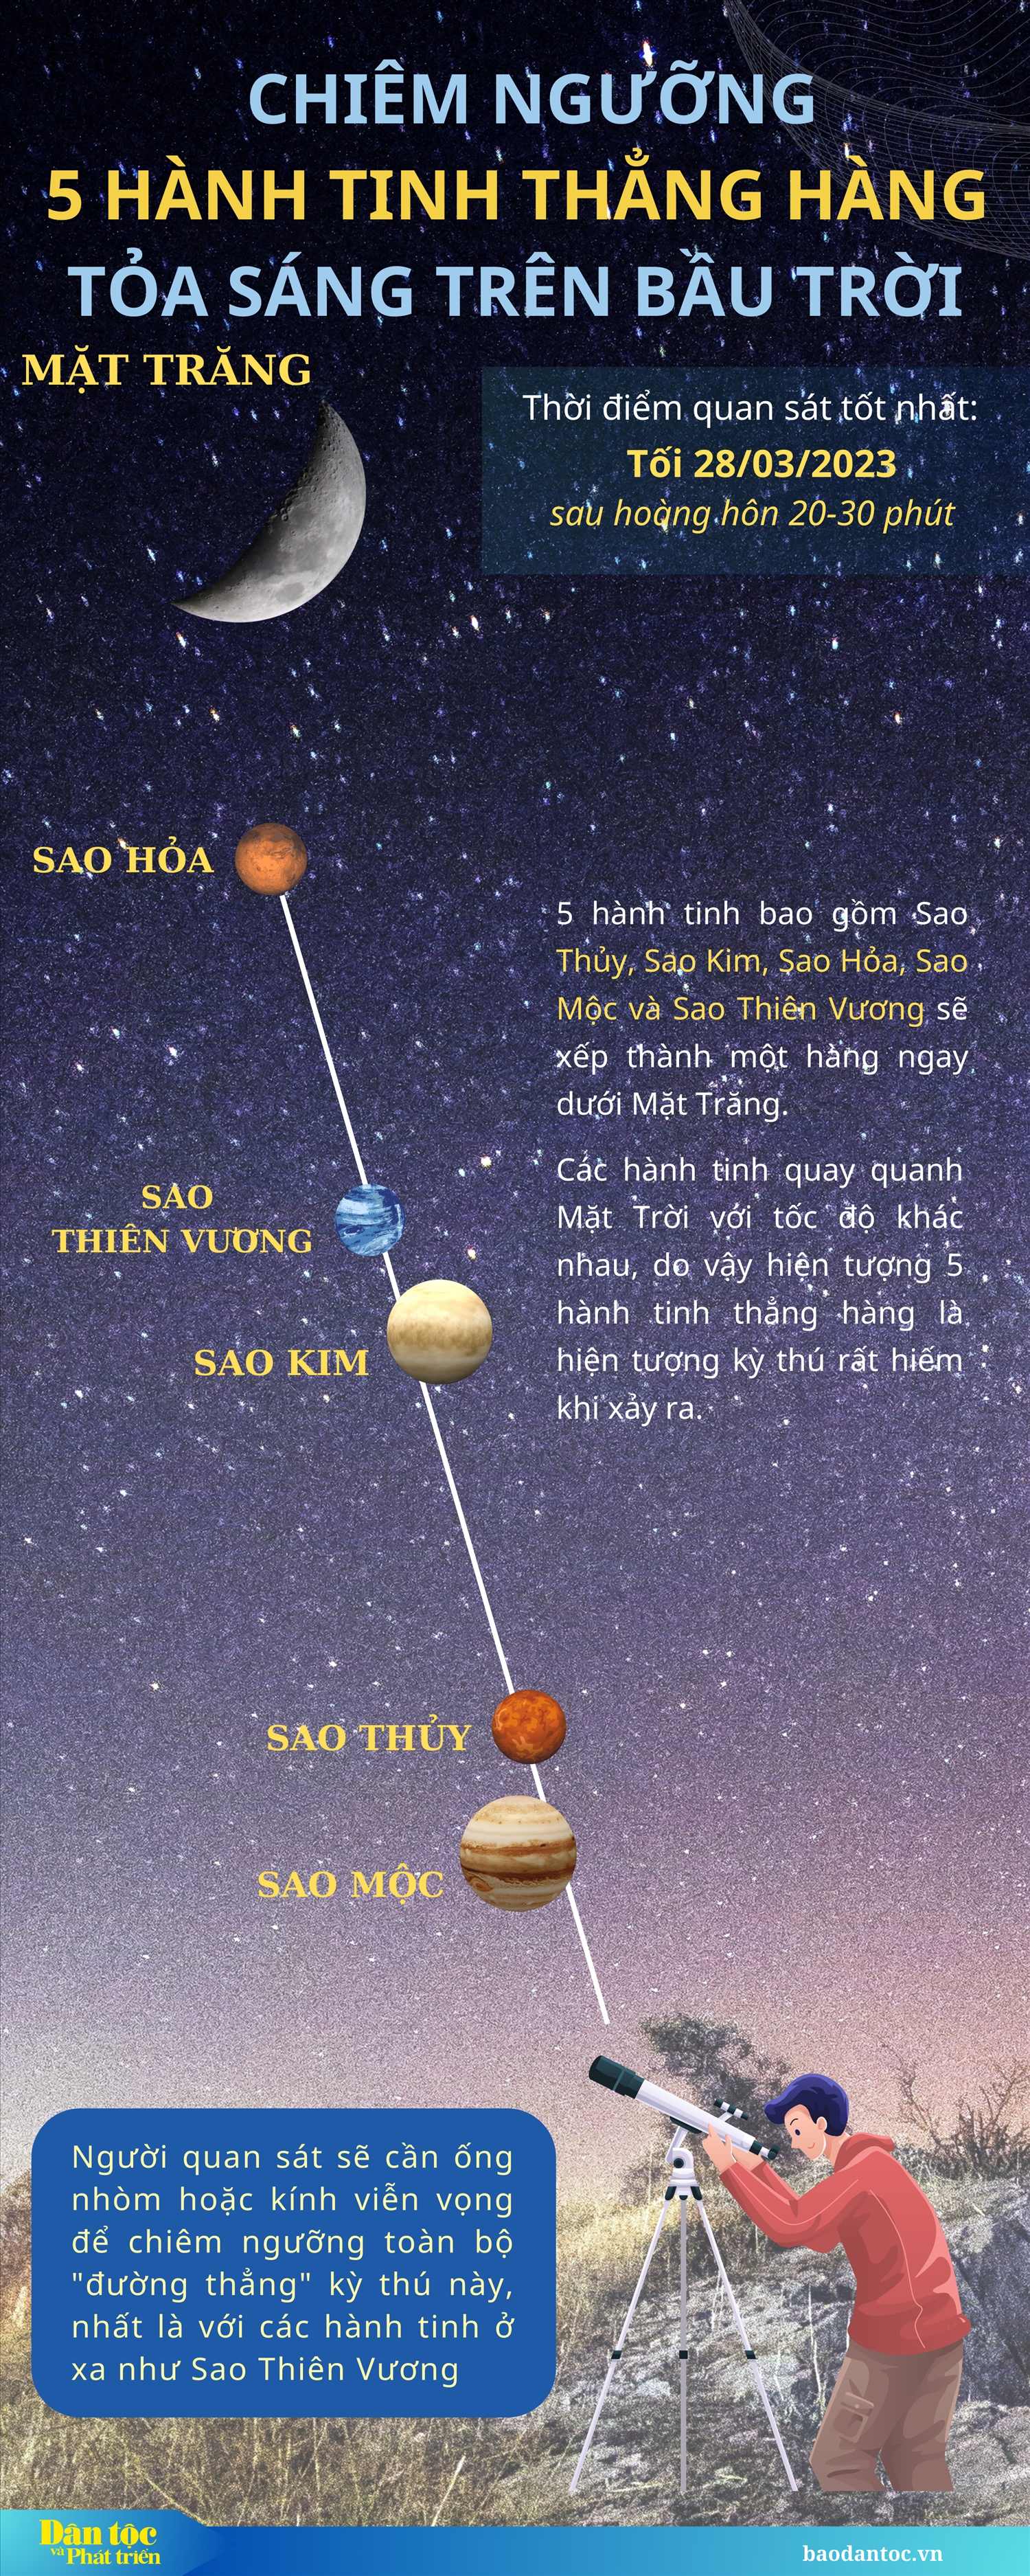 (inforgraphic) Chiêm ngưỡng 5 hành tinh thẳng hàng tỏa sáng trên bầu trời